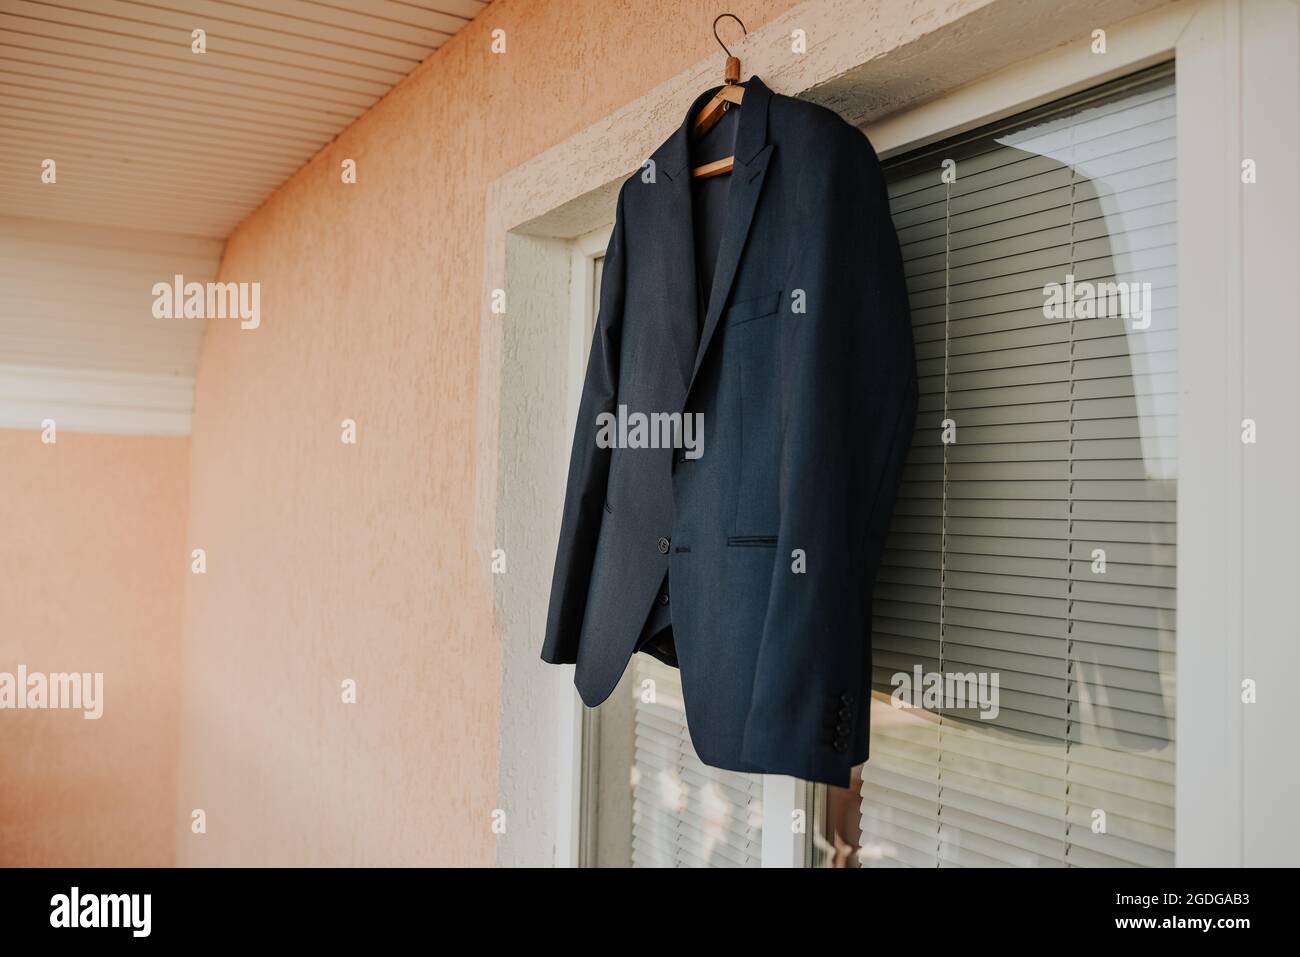 Une veste noire est suspendue contre une fenêtre blanche dans la pièce. Blazer classique classique bleu foncé brun noir pour hommes. Vêtements de mode pour hommes d'affaires Banque D'Images